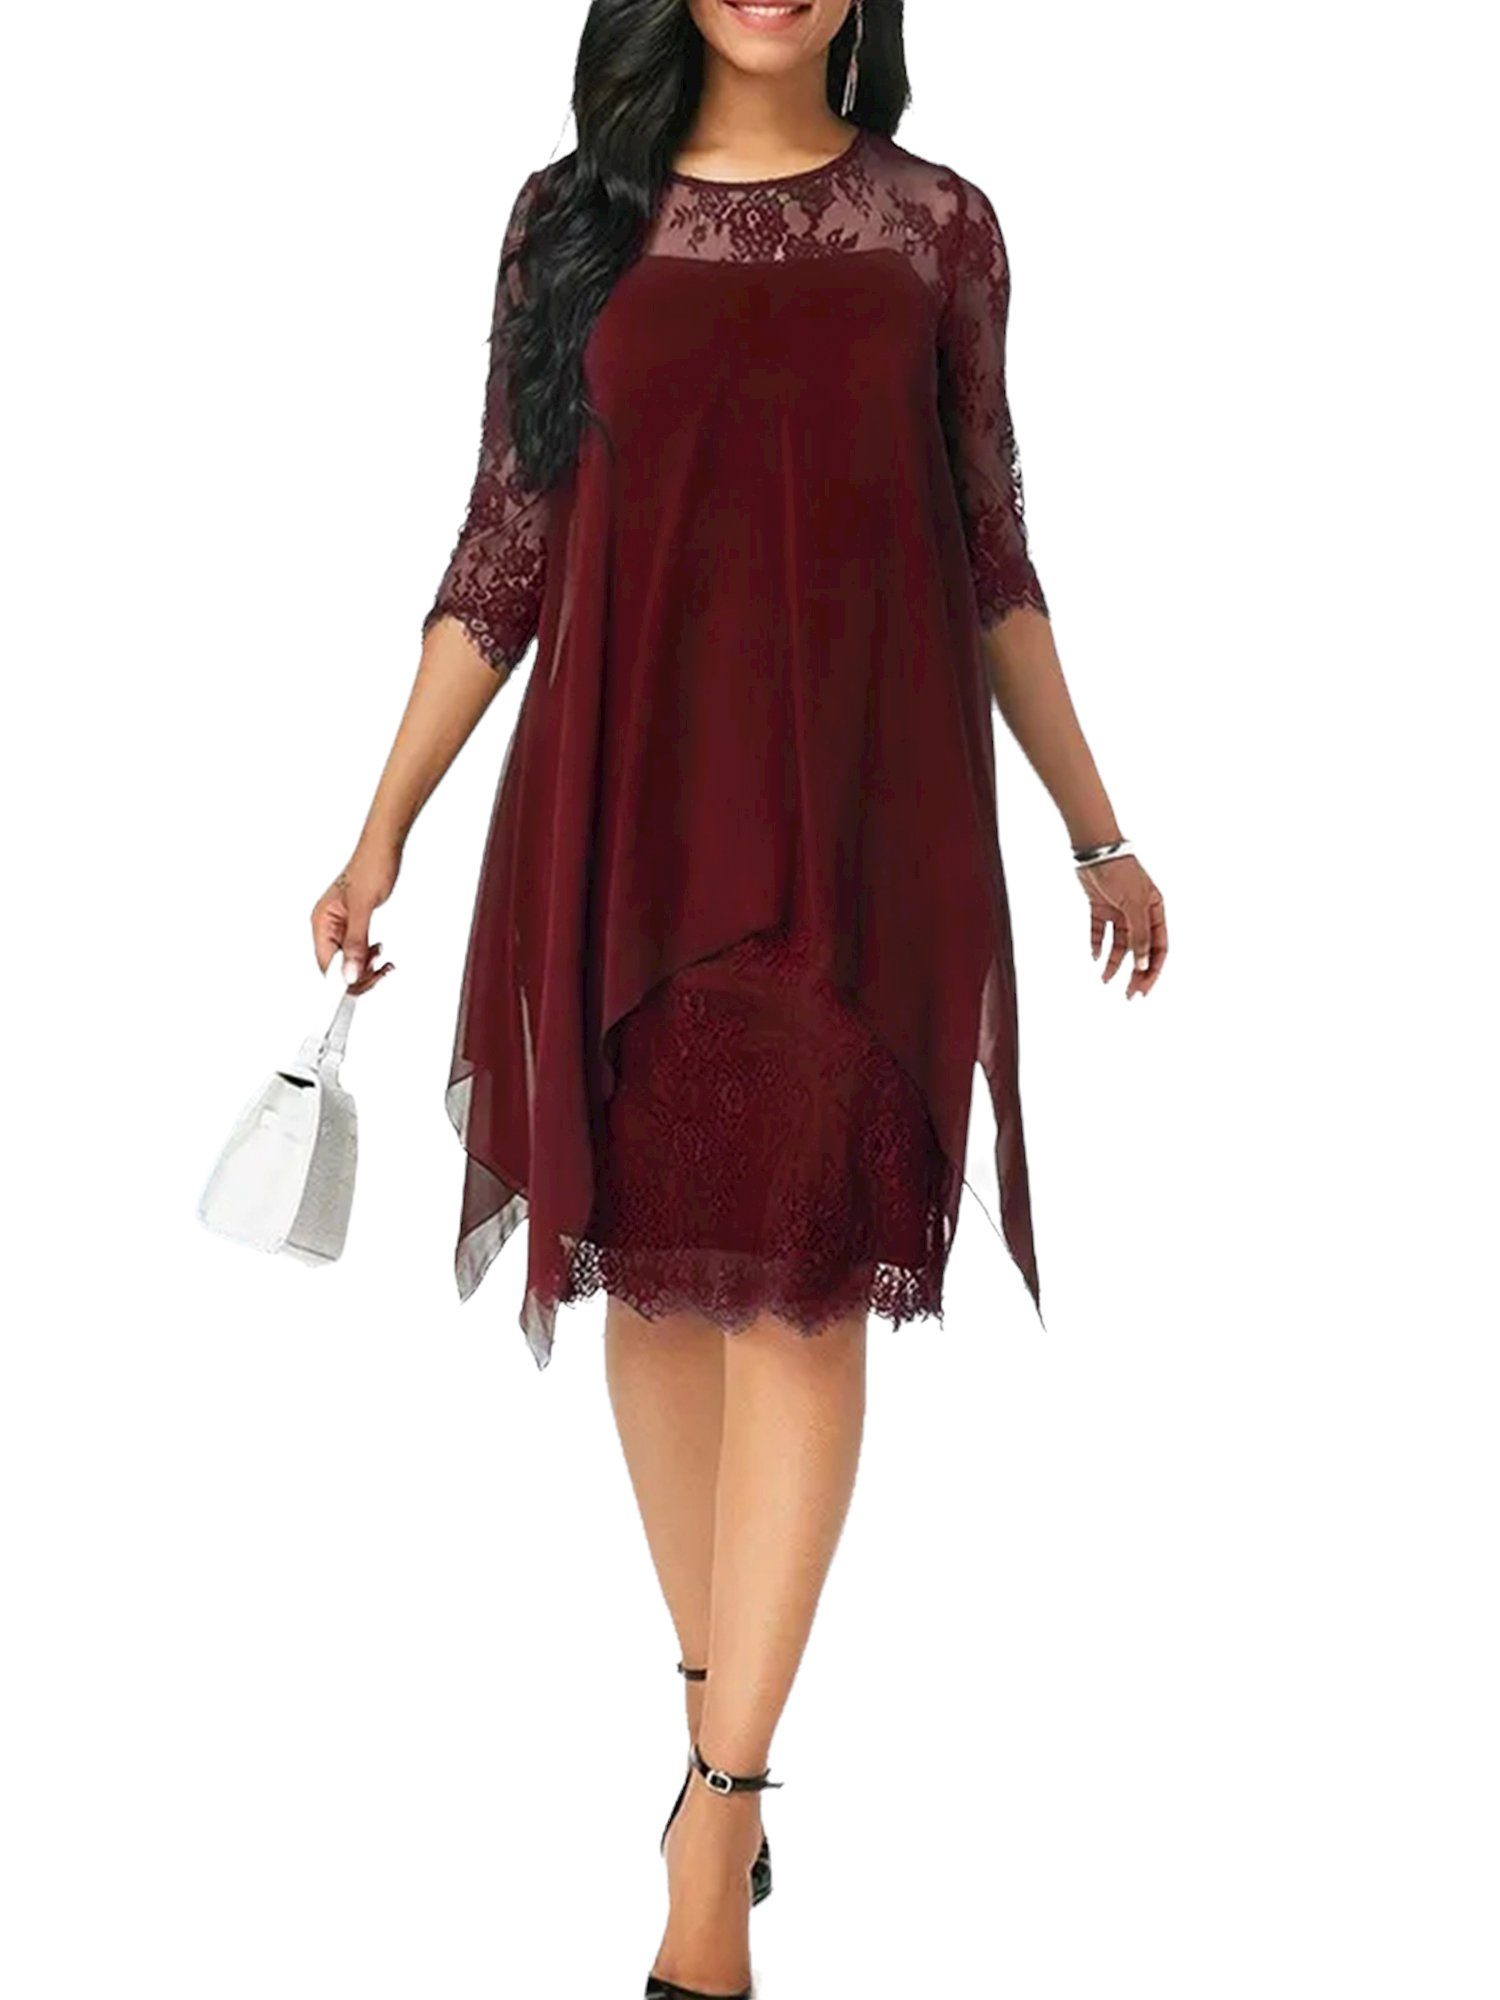 PYL Chiffonkleid »Damen Chiffon Spitze Abendkleid Homecoming Cocktail Party  Kleid« 38-50 Größe online kaufen | OTTO